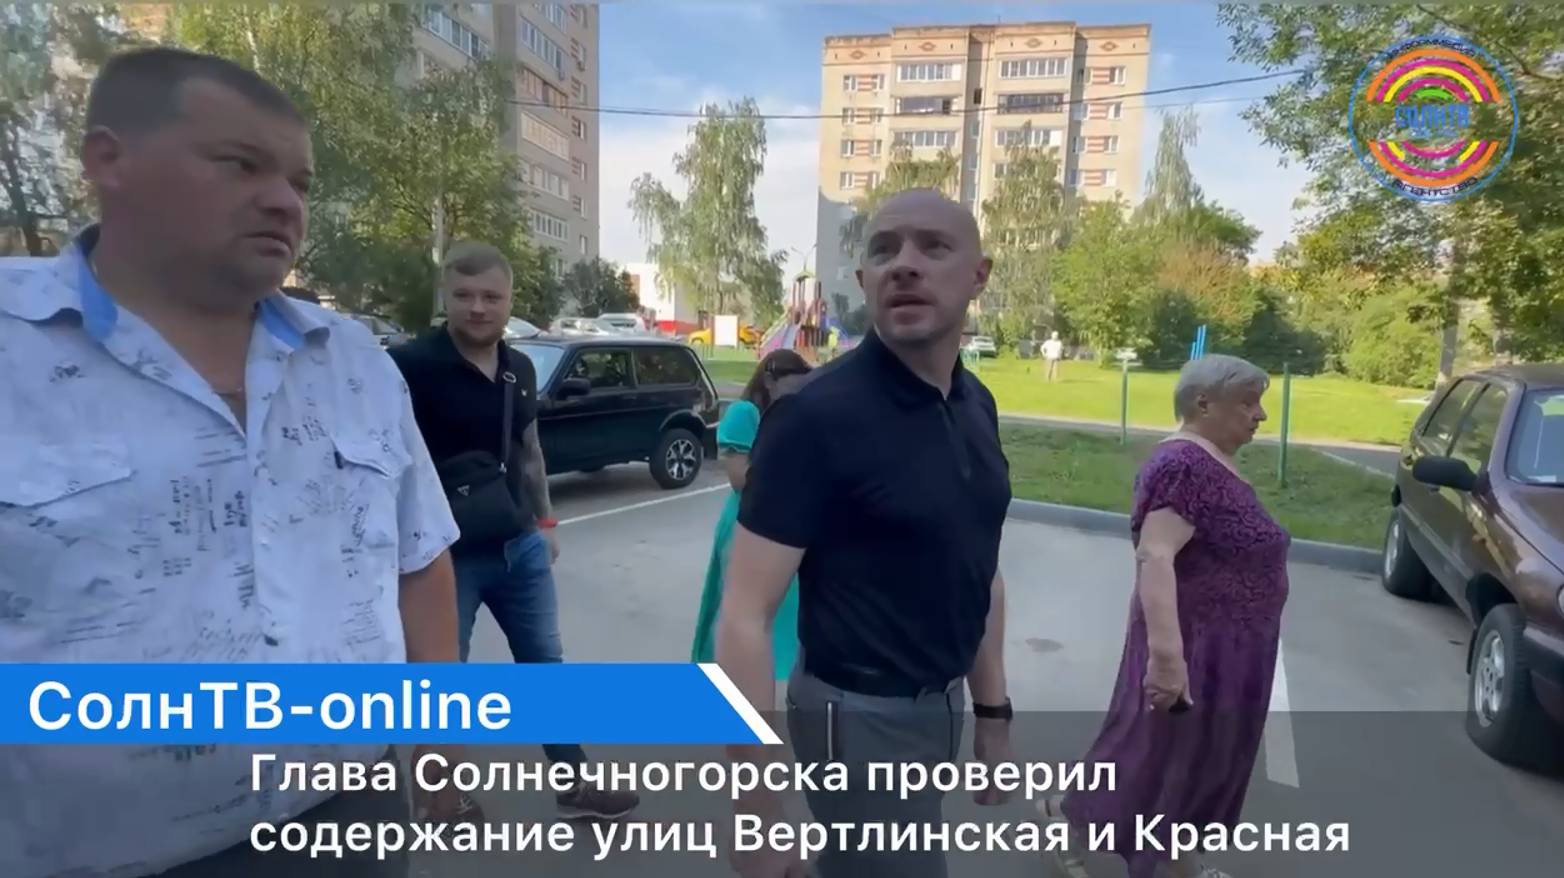 Глава Солнечногорска проверил содержание улиц Вертлинская и Красная